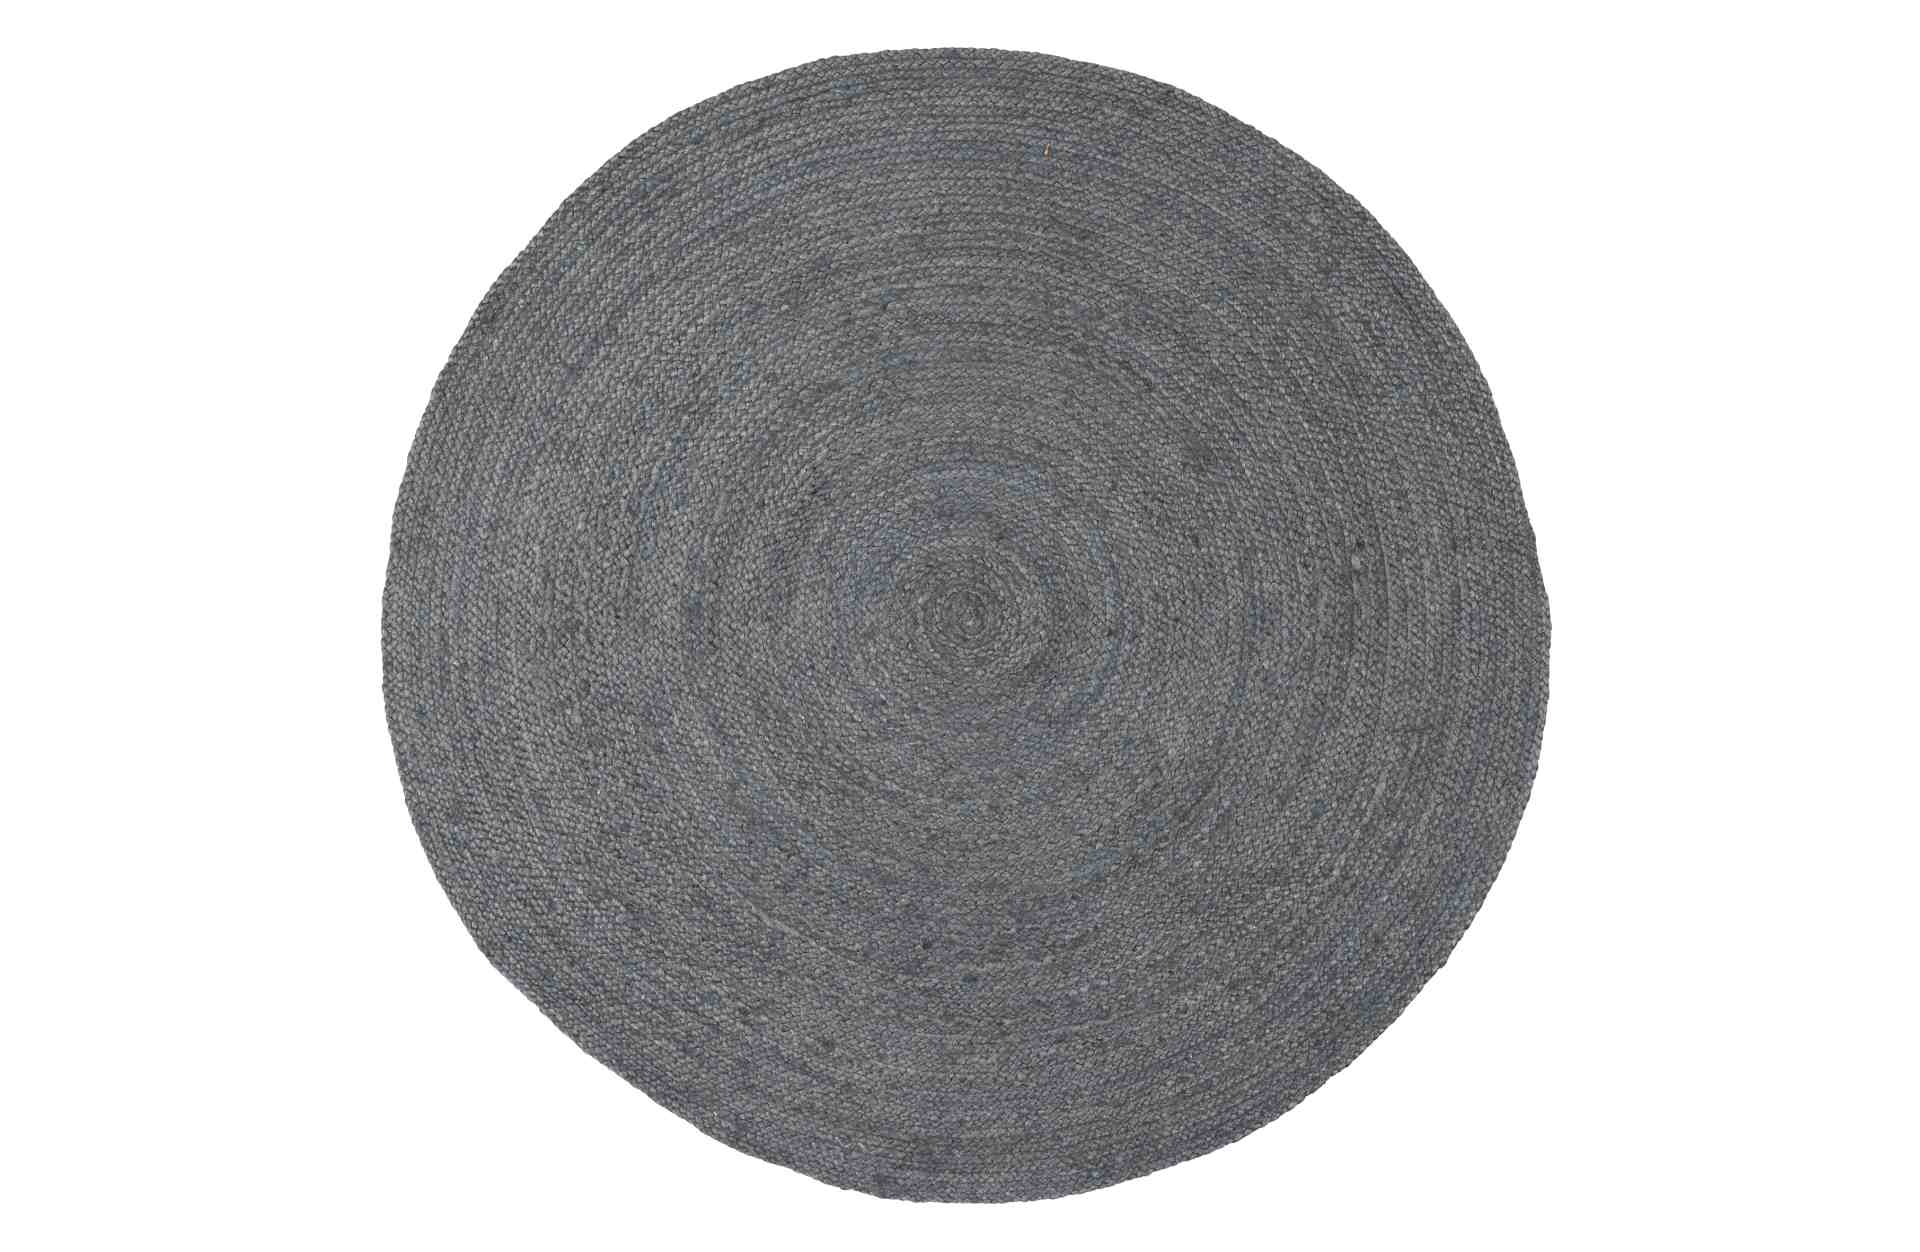 Der Teppich Ross überzeugt mit seinem klassischen Design. Gefertigt wurde er aus Jute, welche einen grauen Farbton besitzen. Der Teppich besitzt einen Durchmesser von 150 cm.